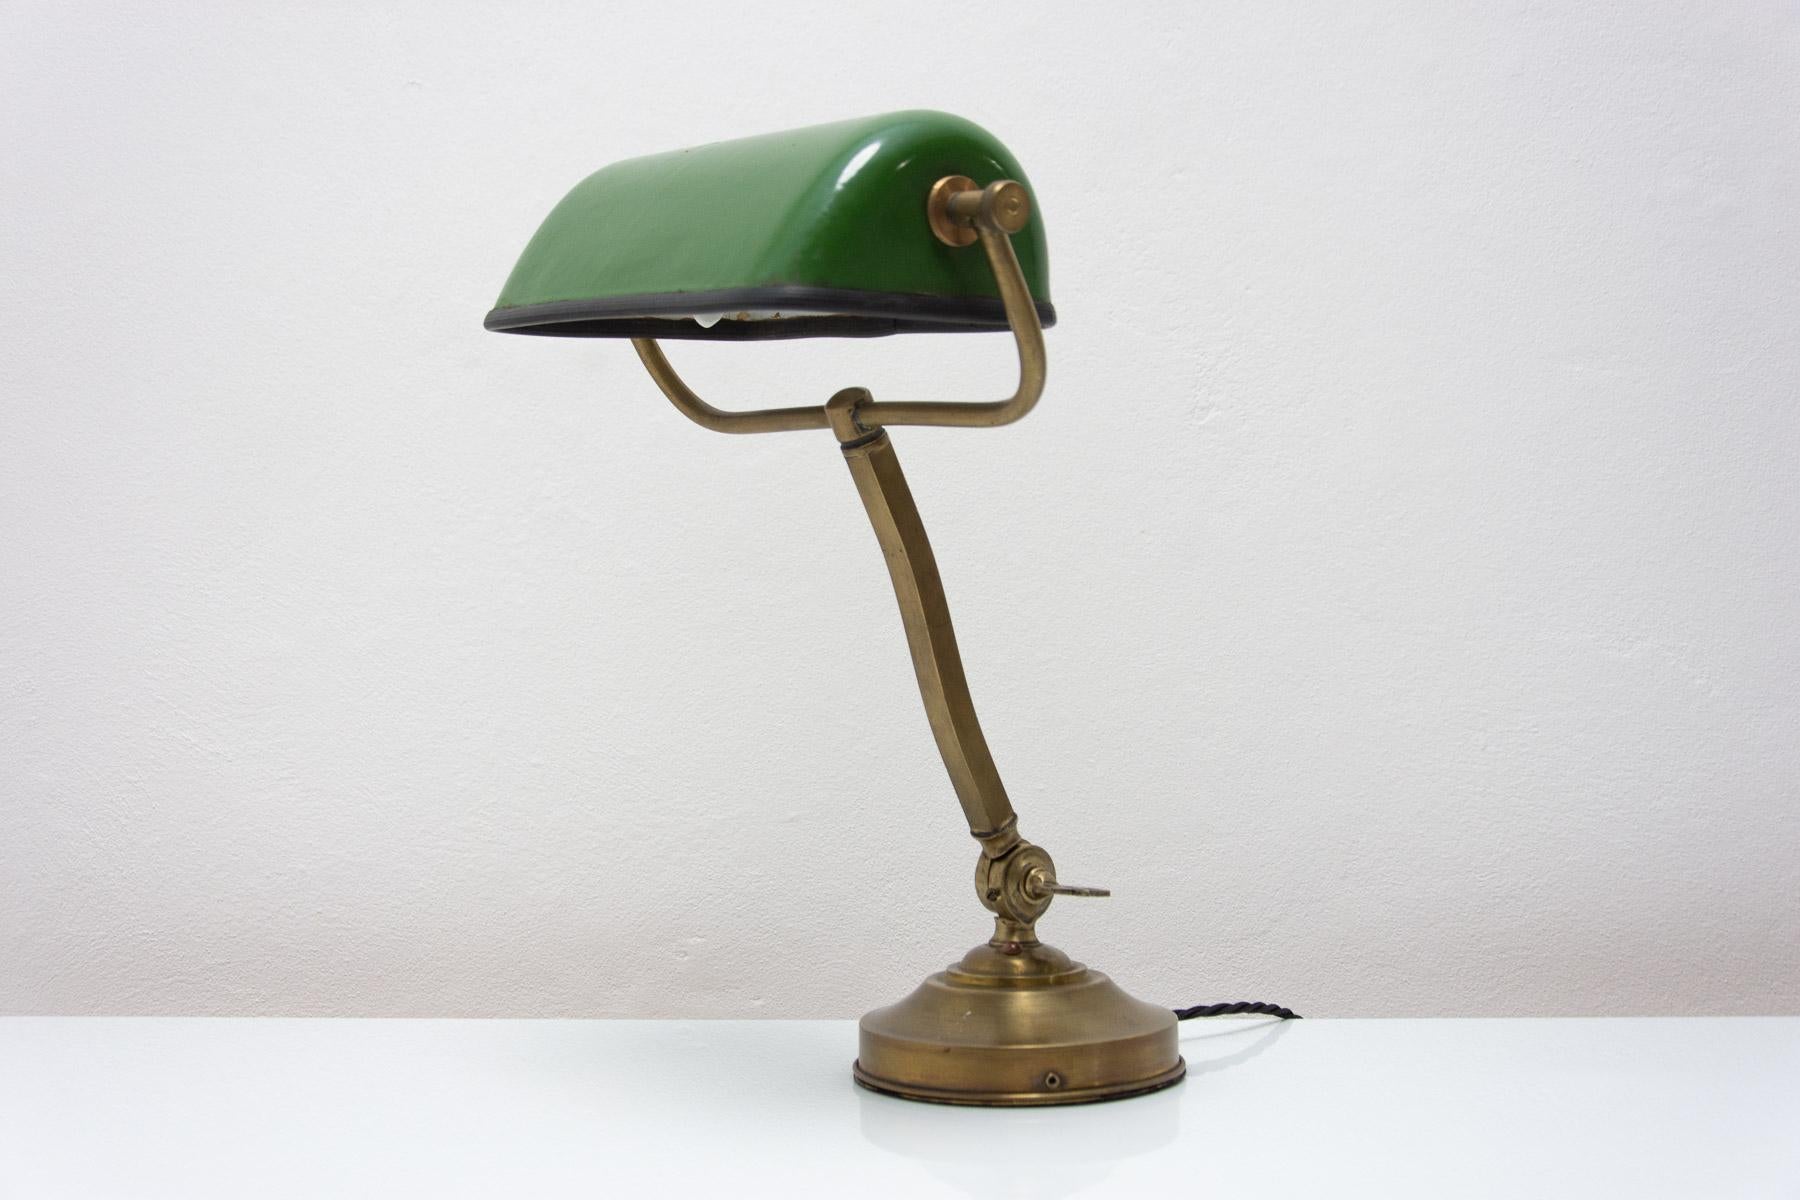 
Lampe de bureau caractéristique, de style Bauhaus, conçue en 1930 et fabriquée en Bohemia. La lampe a une base chromée et un chapeau en métal émaillé. Un look fantastique qui s'intègre dans de nombreux intérieurs.En excellent état. Nouveau